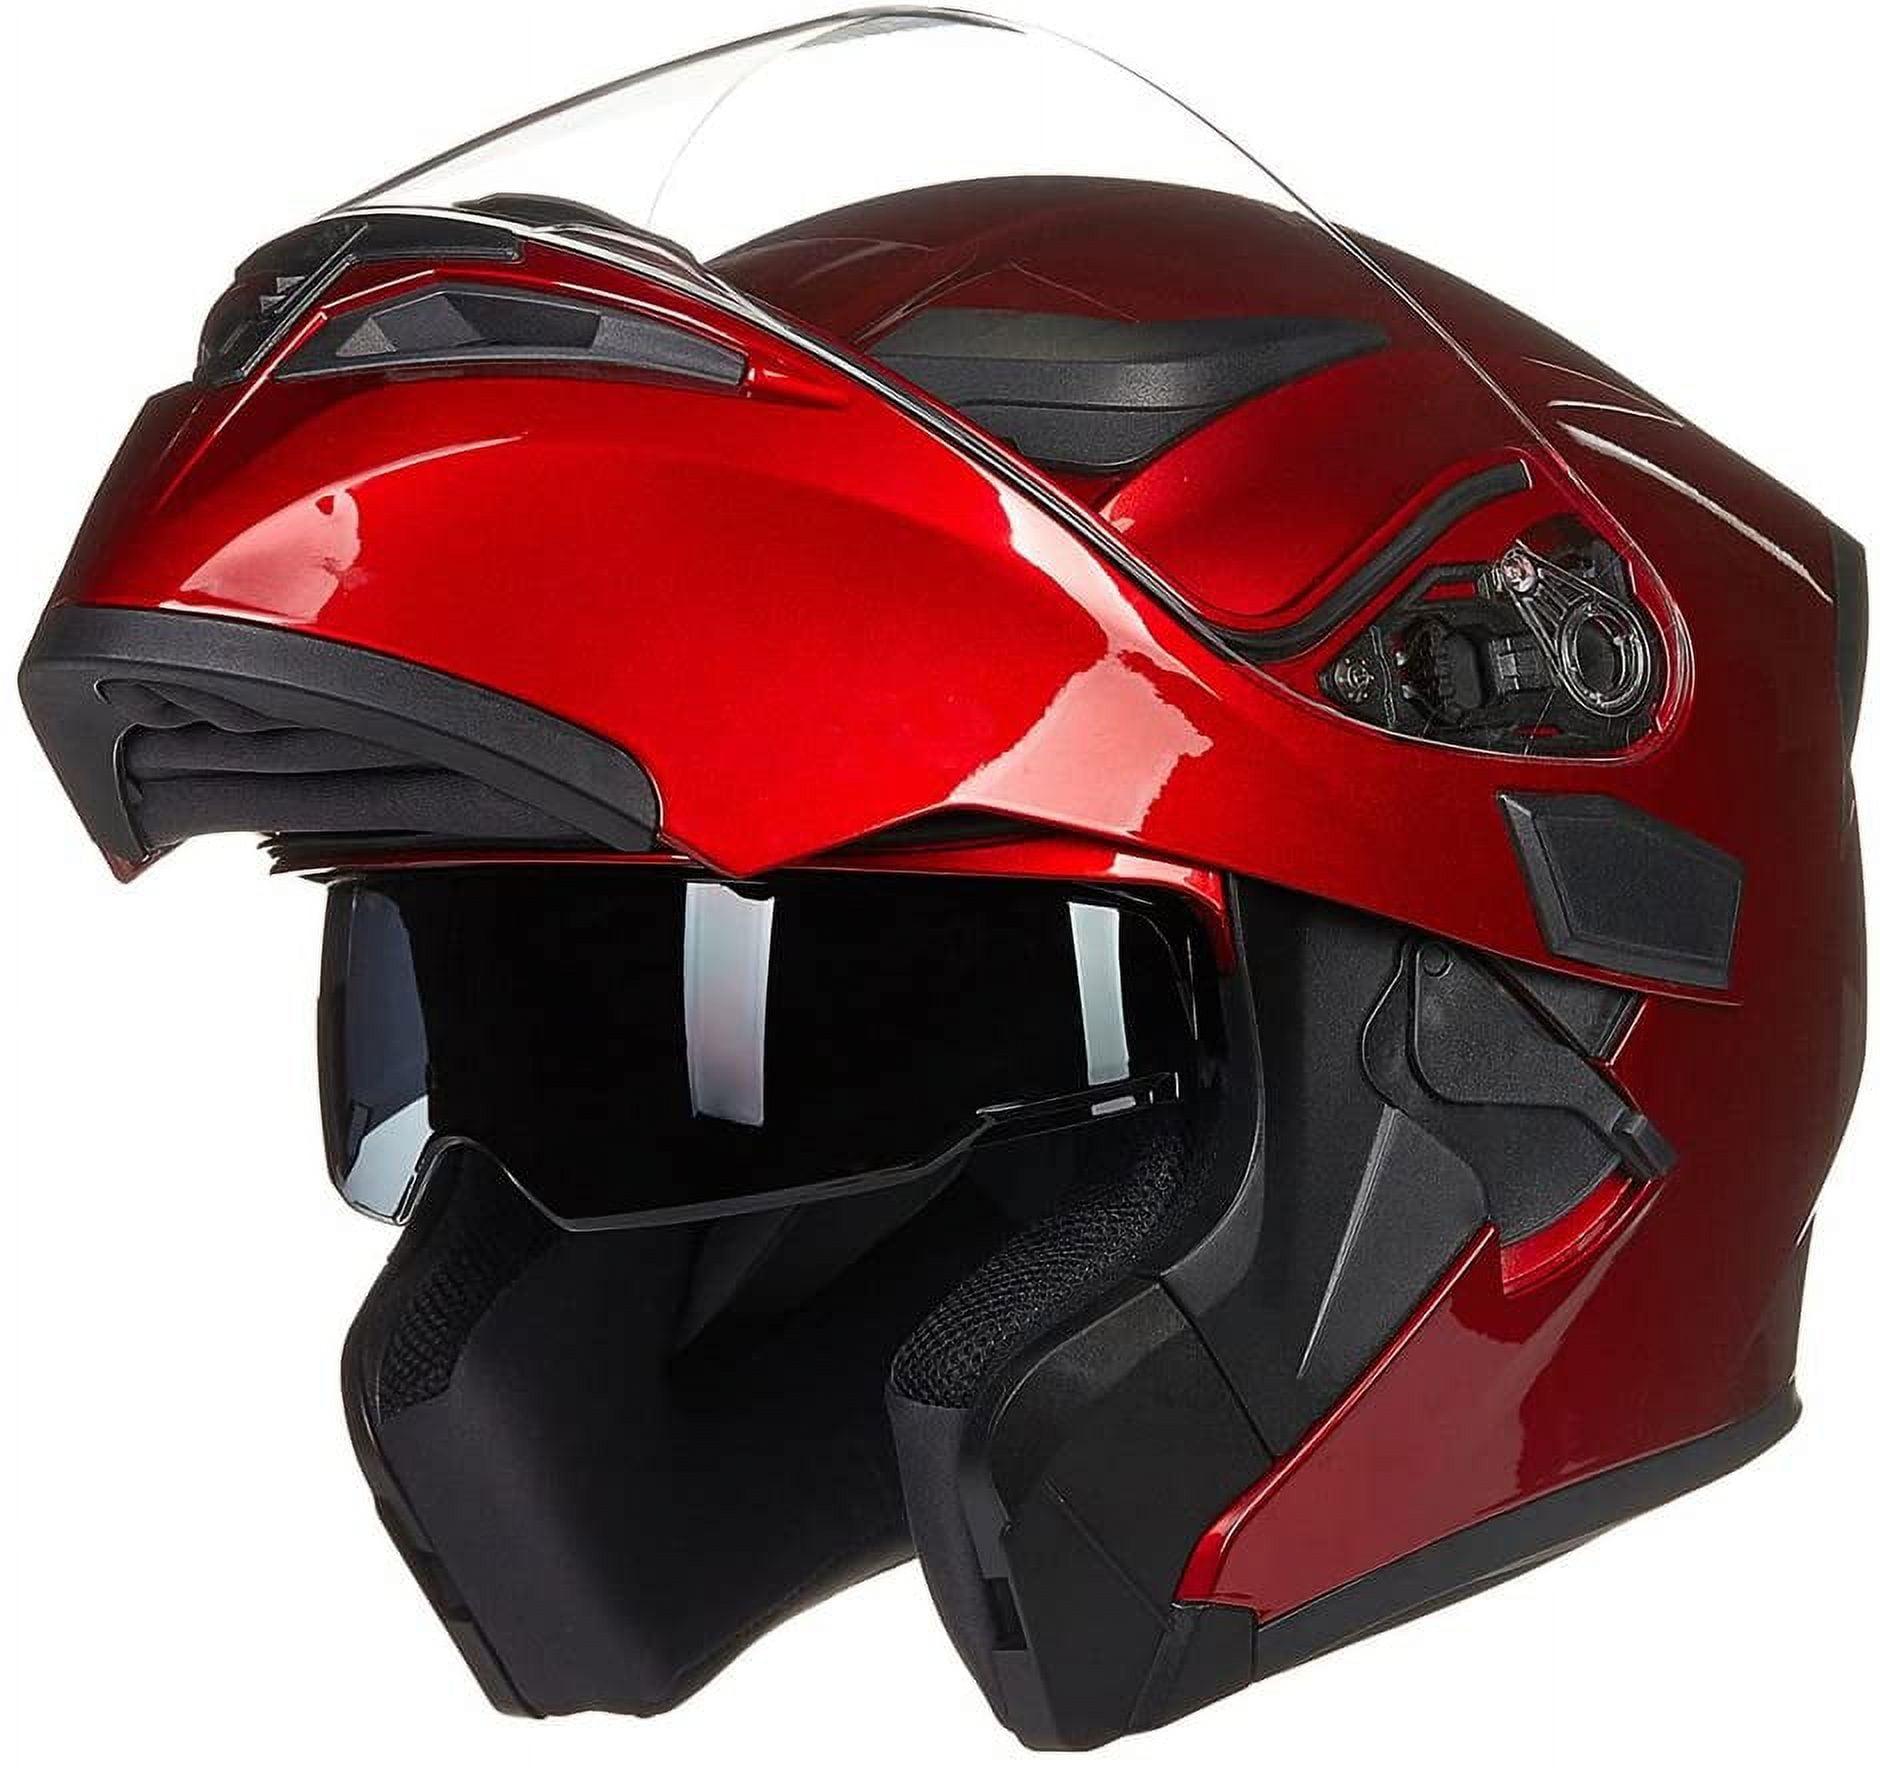 ILM Motorcycle Dual Visor Flip up Modular Full Face Helmet DOT 6